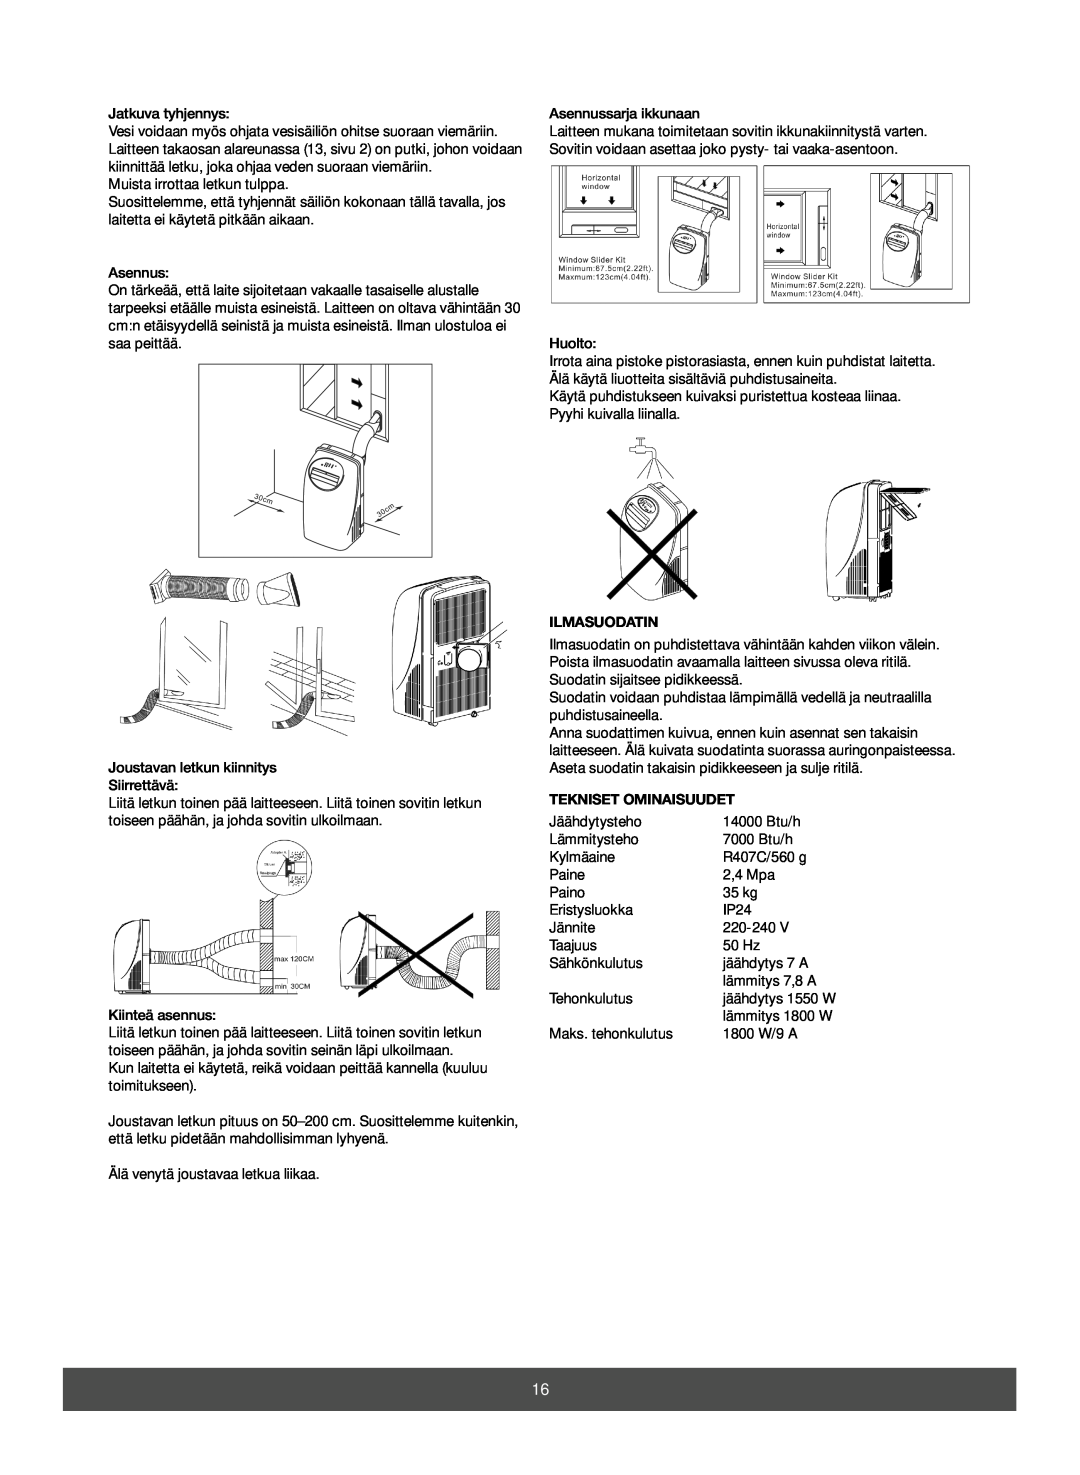 Melissa 673-003 manual Ilmasuodatin, Tekniset Ominaisuudet 